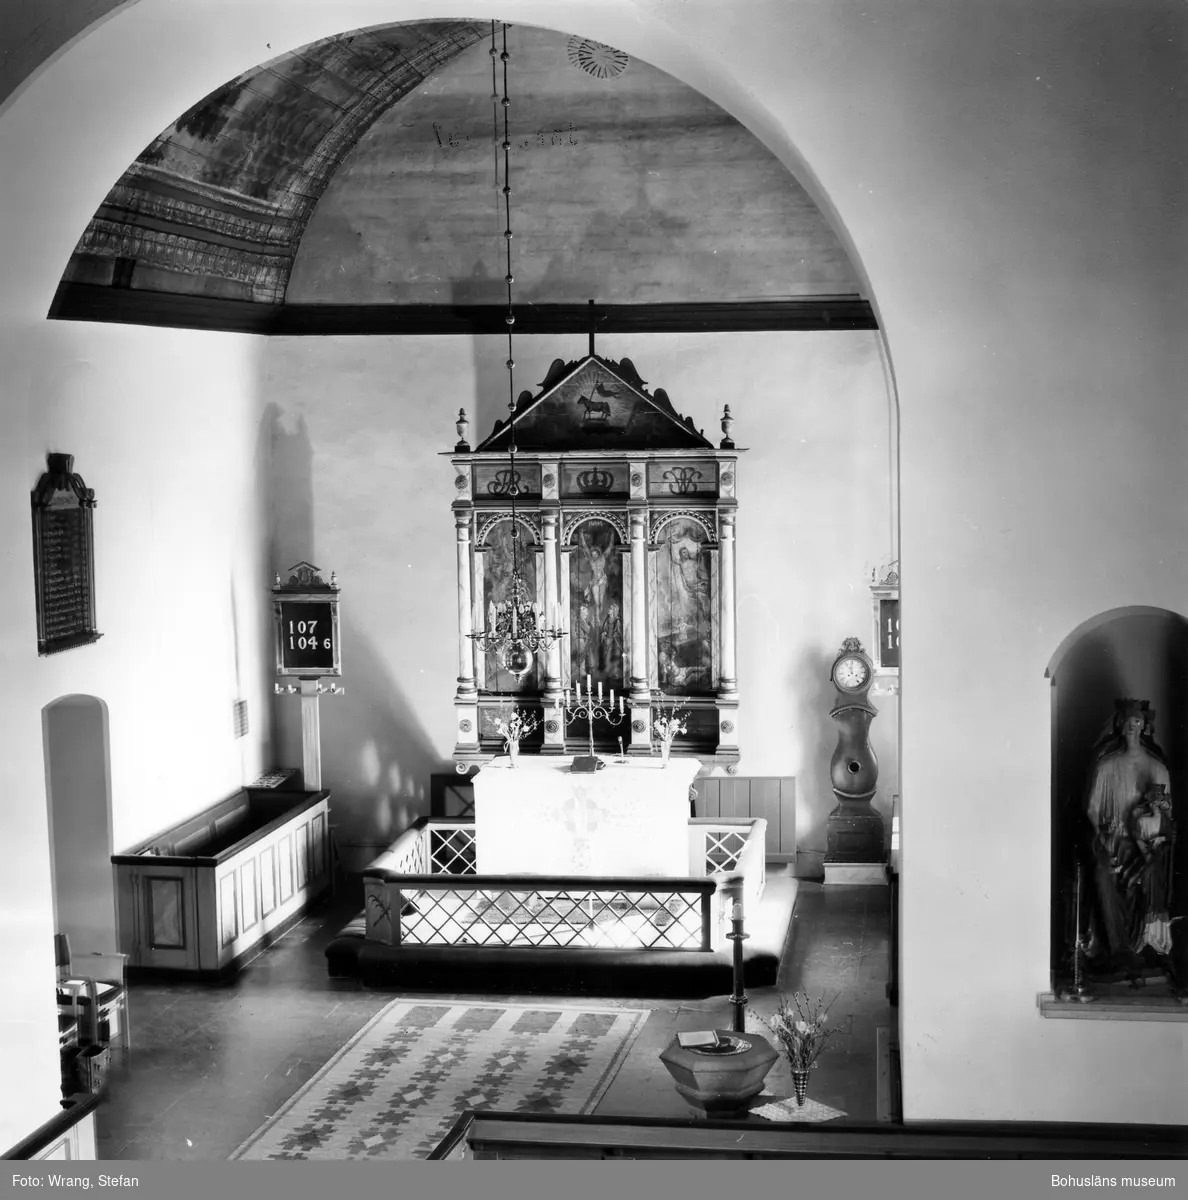 Text till bilden: "Naverstads kyrka. Interiör mot koret".